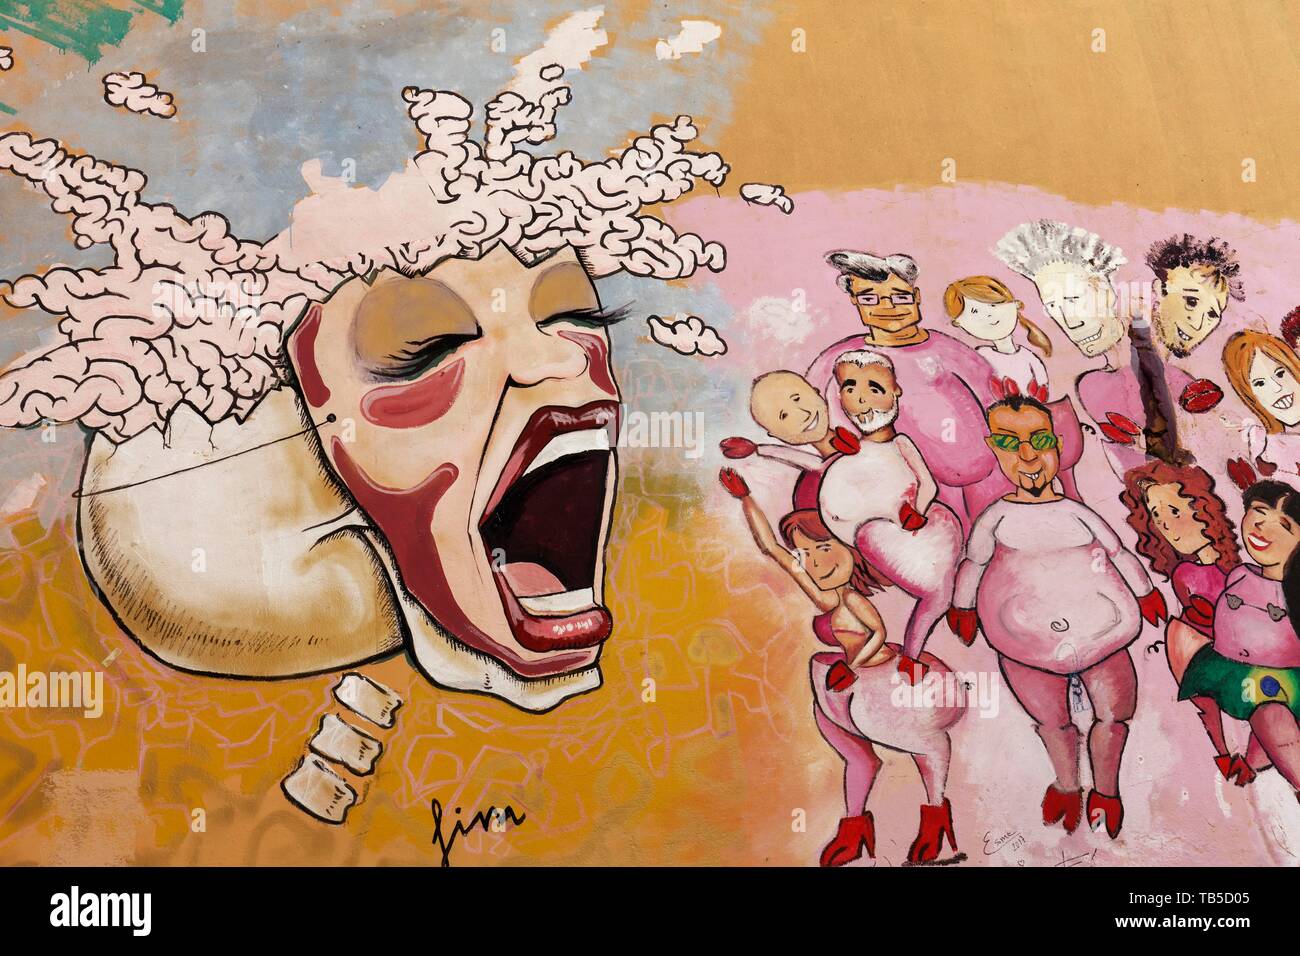 Crâne avec masque lié sur femme crie à un groupe de personnes, graffito, art de rue dans le district de Carme, vieille ville, Valencia, Espagne Banque D'Images